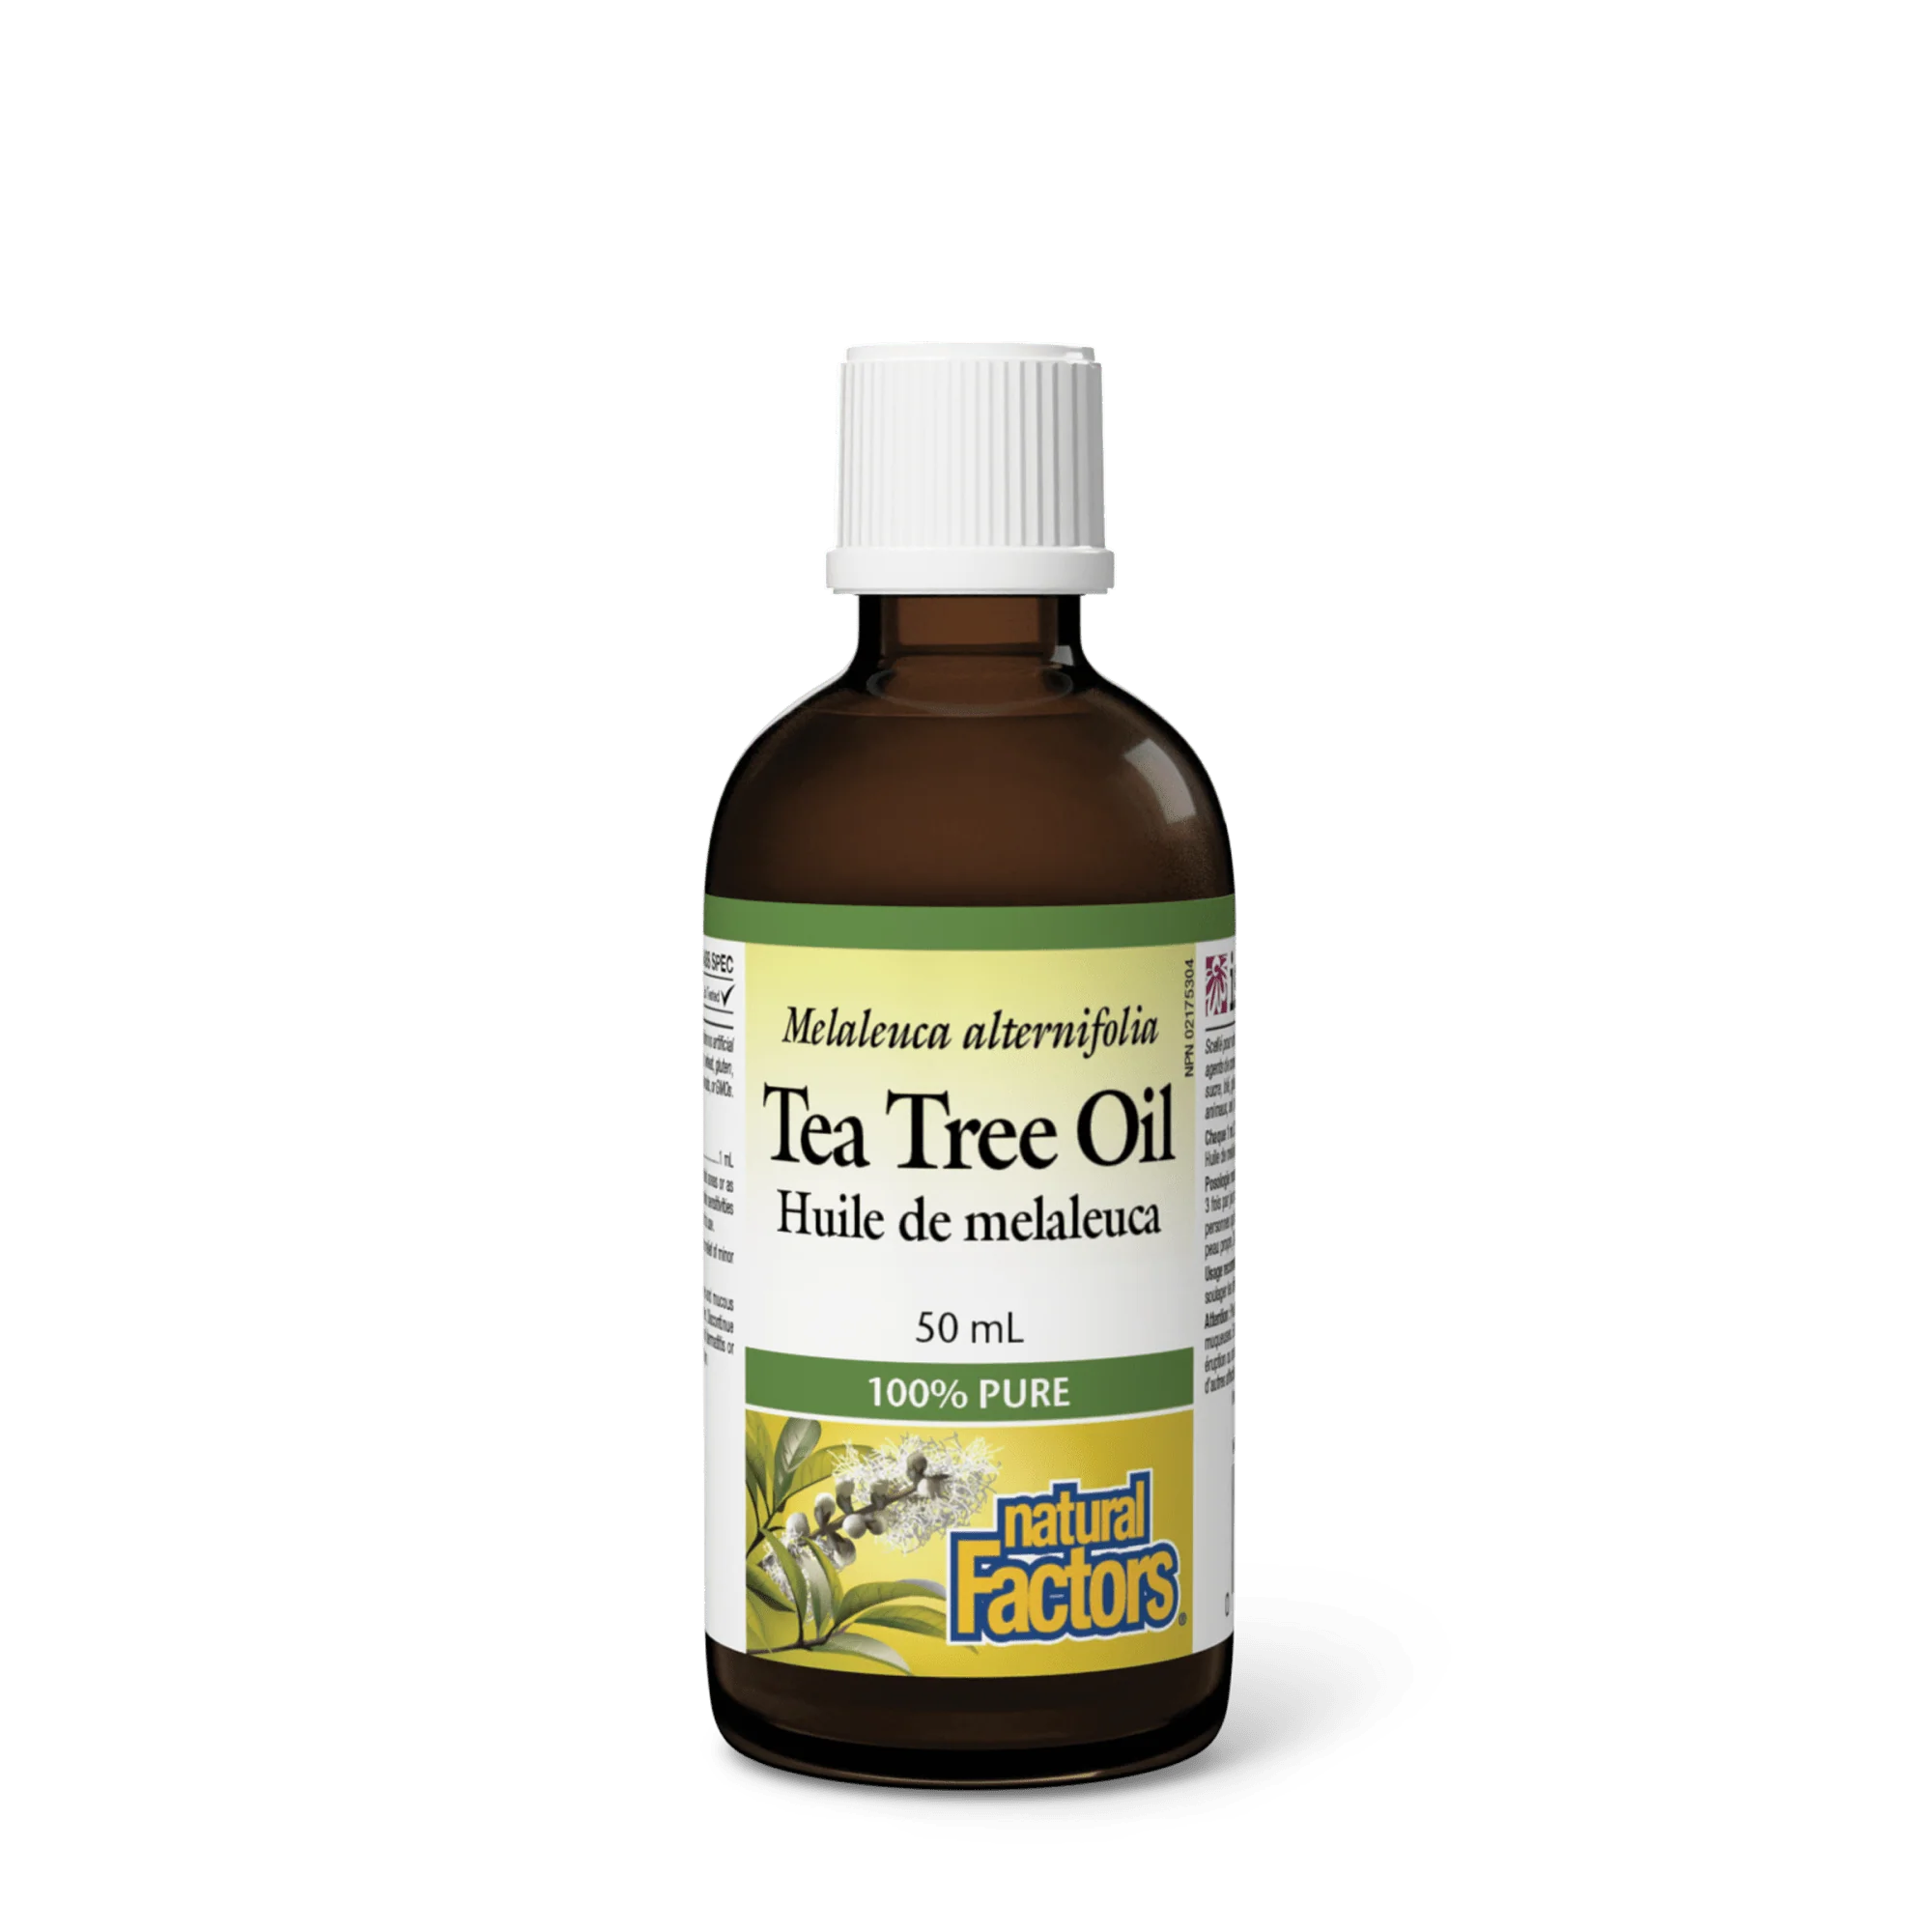 Natural Factors Tea Tree Oil 50ml